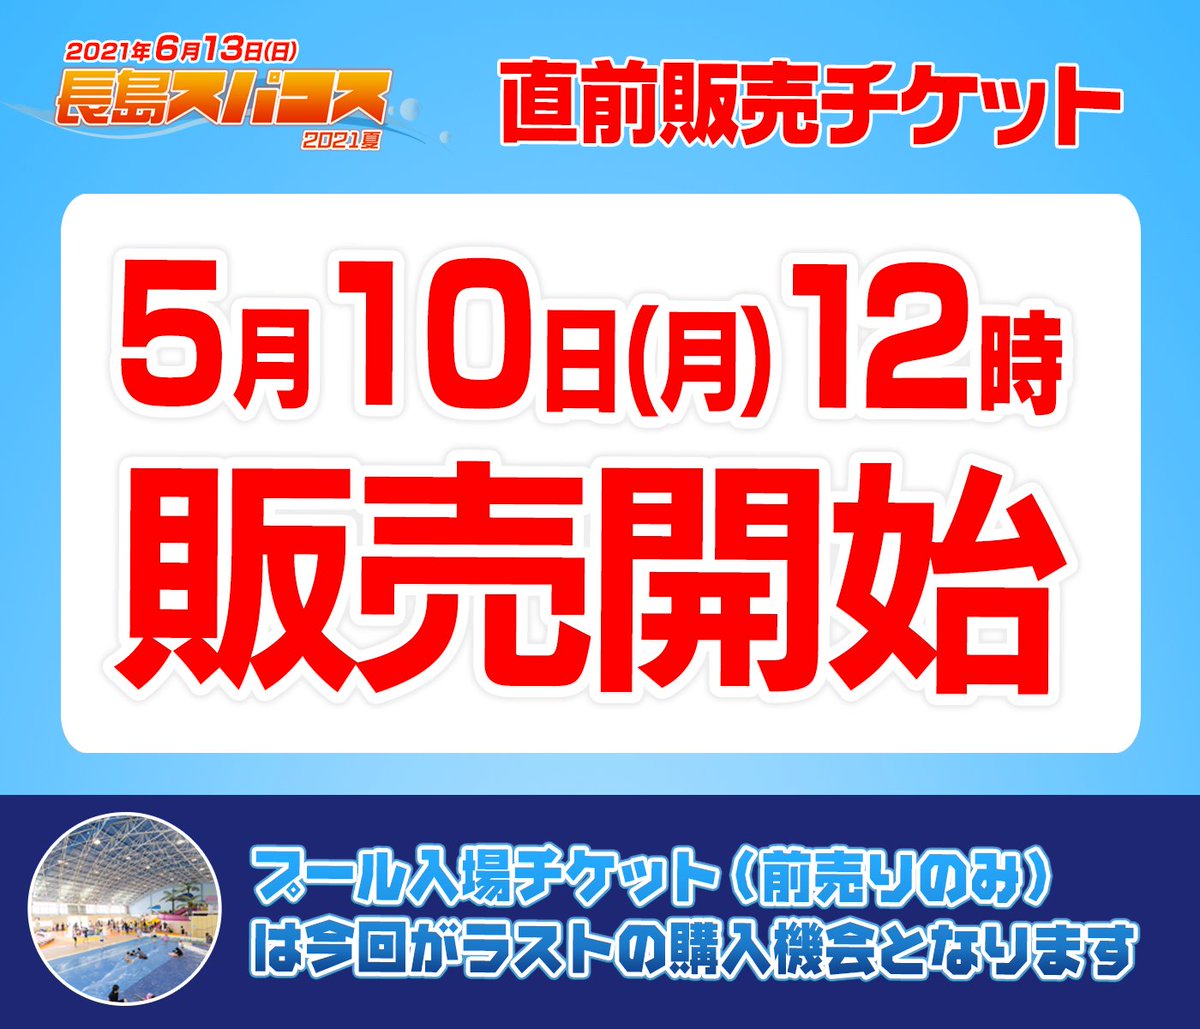 長島スパコス21夏 公式 テーマパーク開放型大型コスプレイベント 6月13日 日 に開催 Spacos Official Twitter